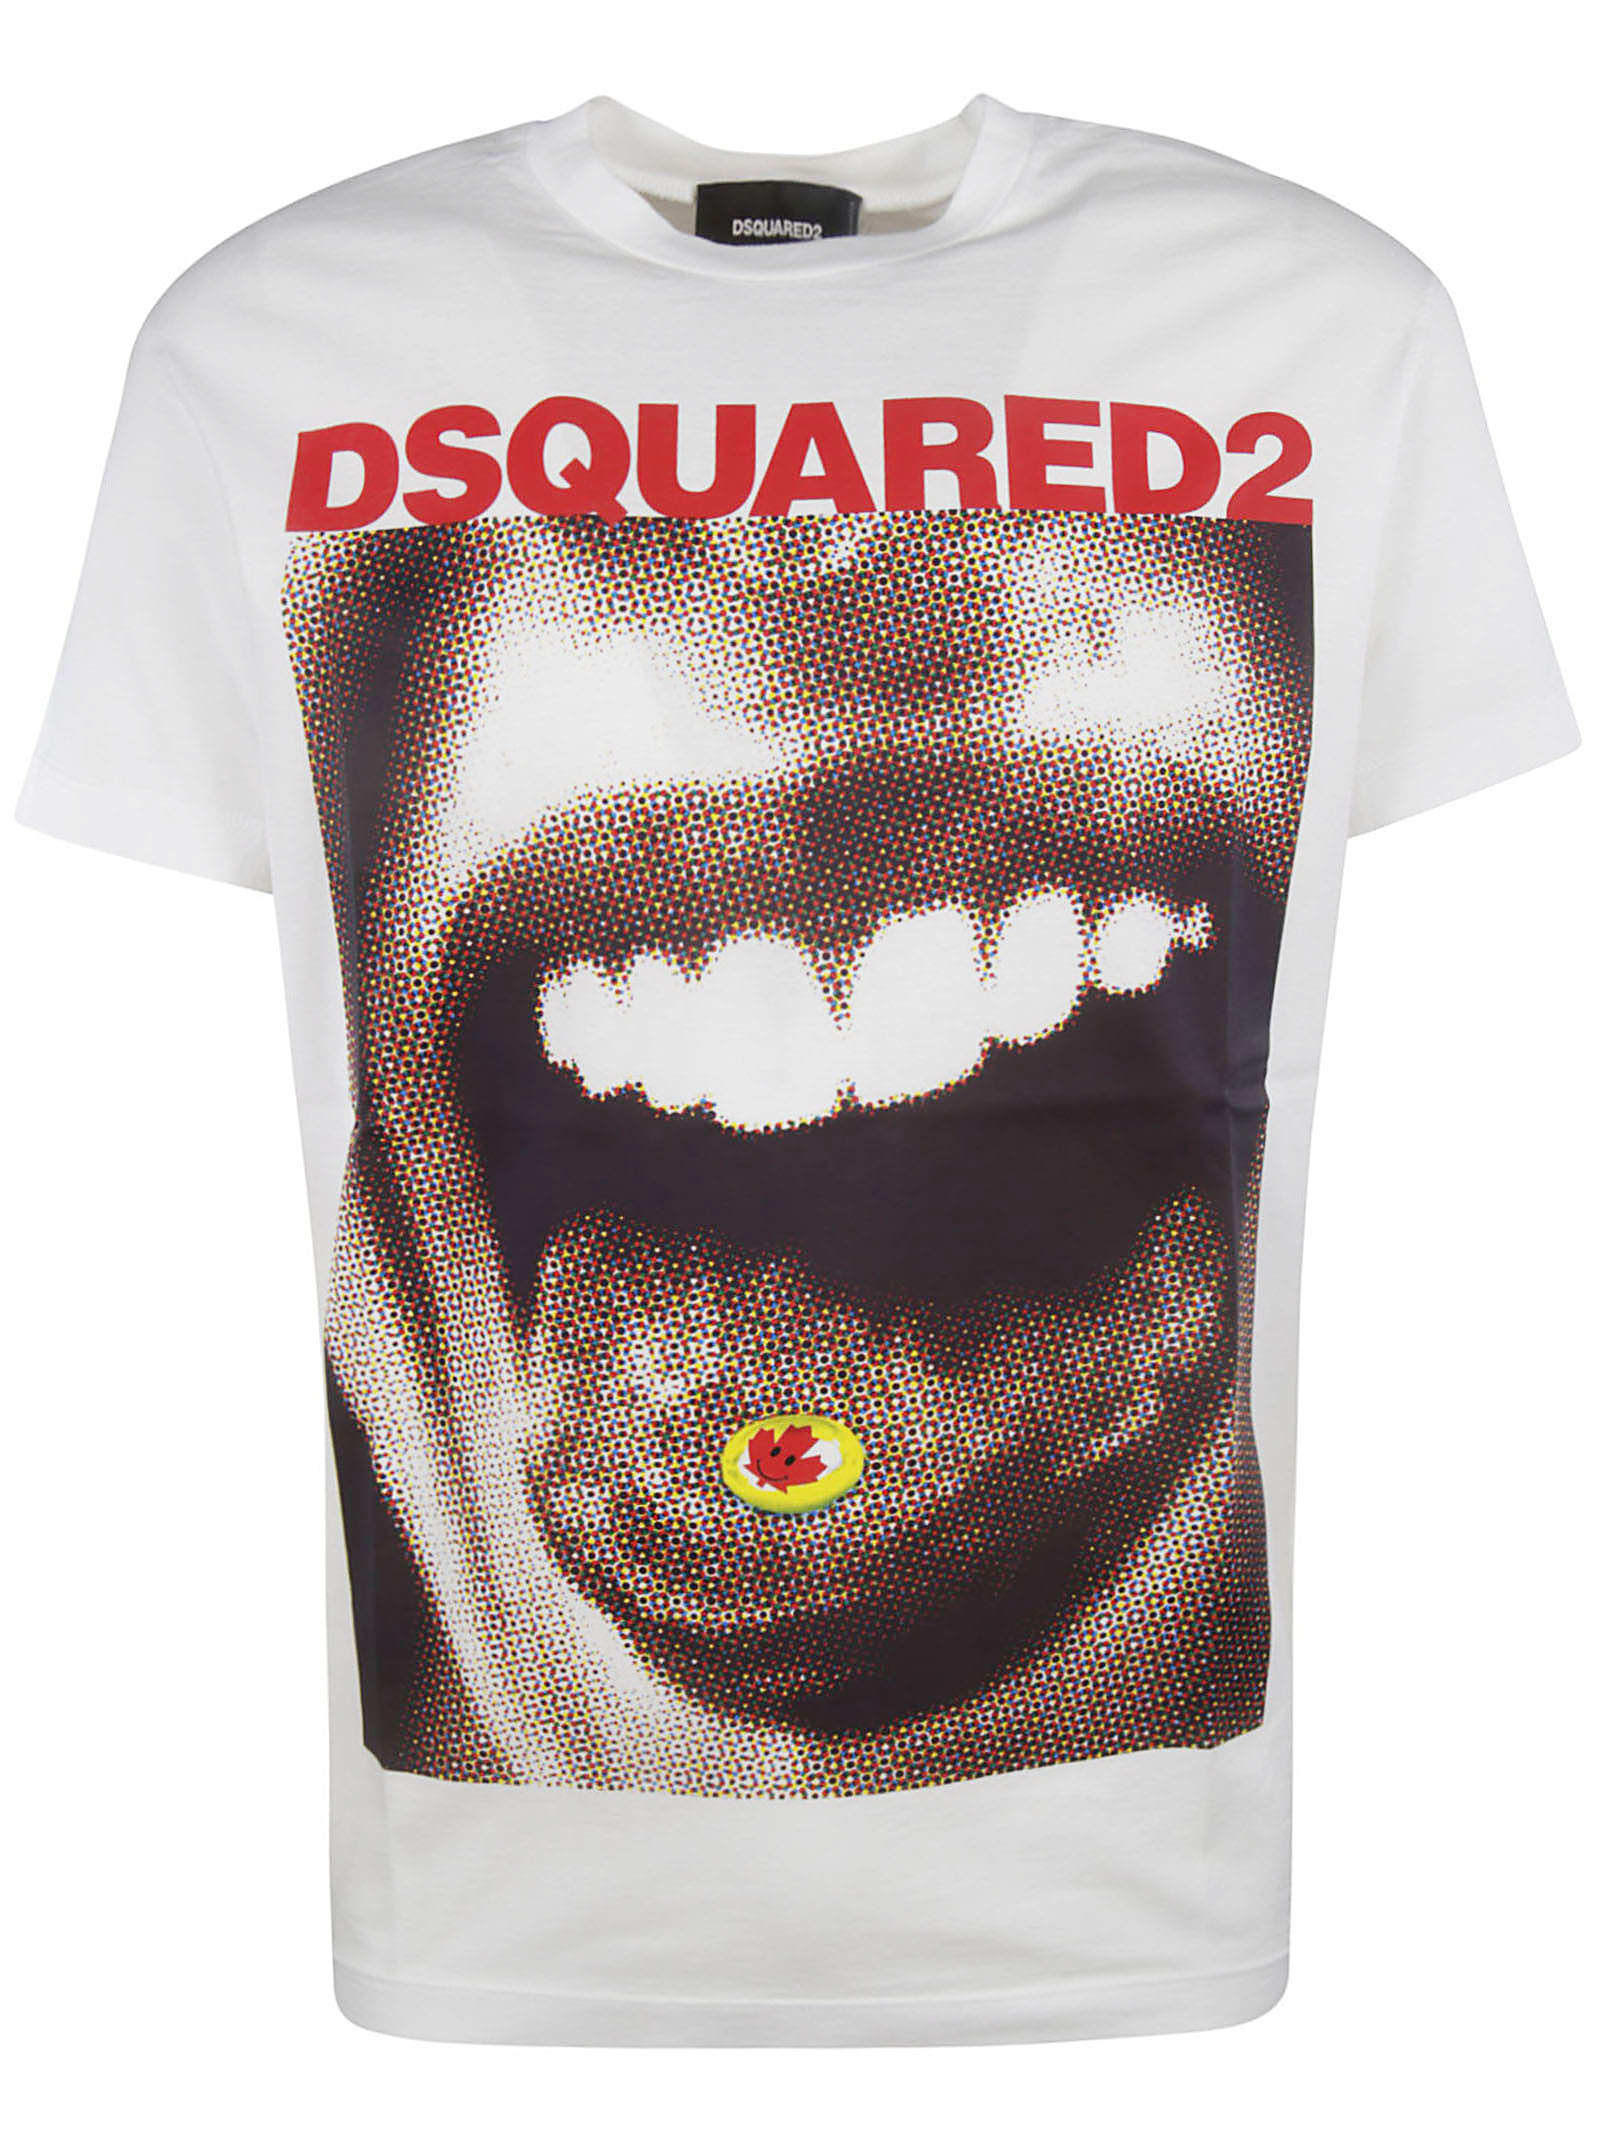 dsquared2 t shirt fit